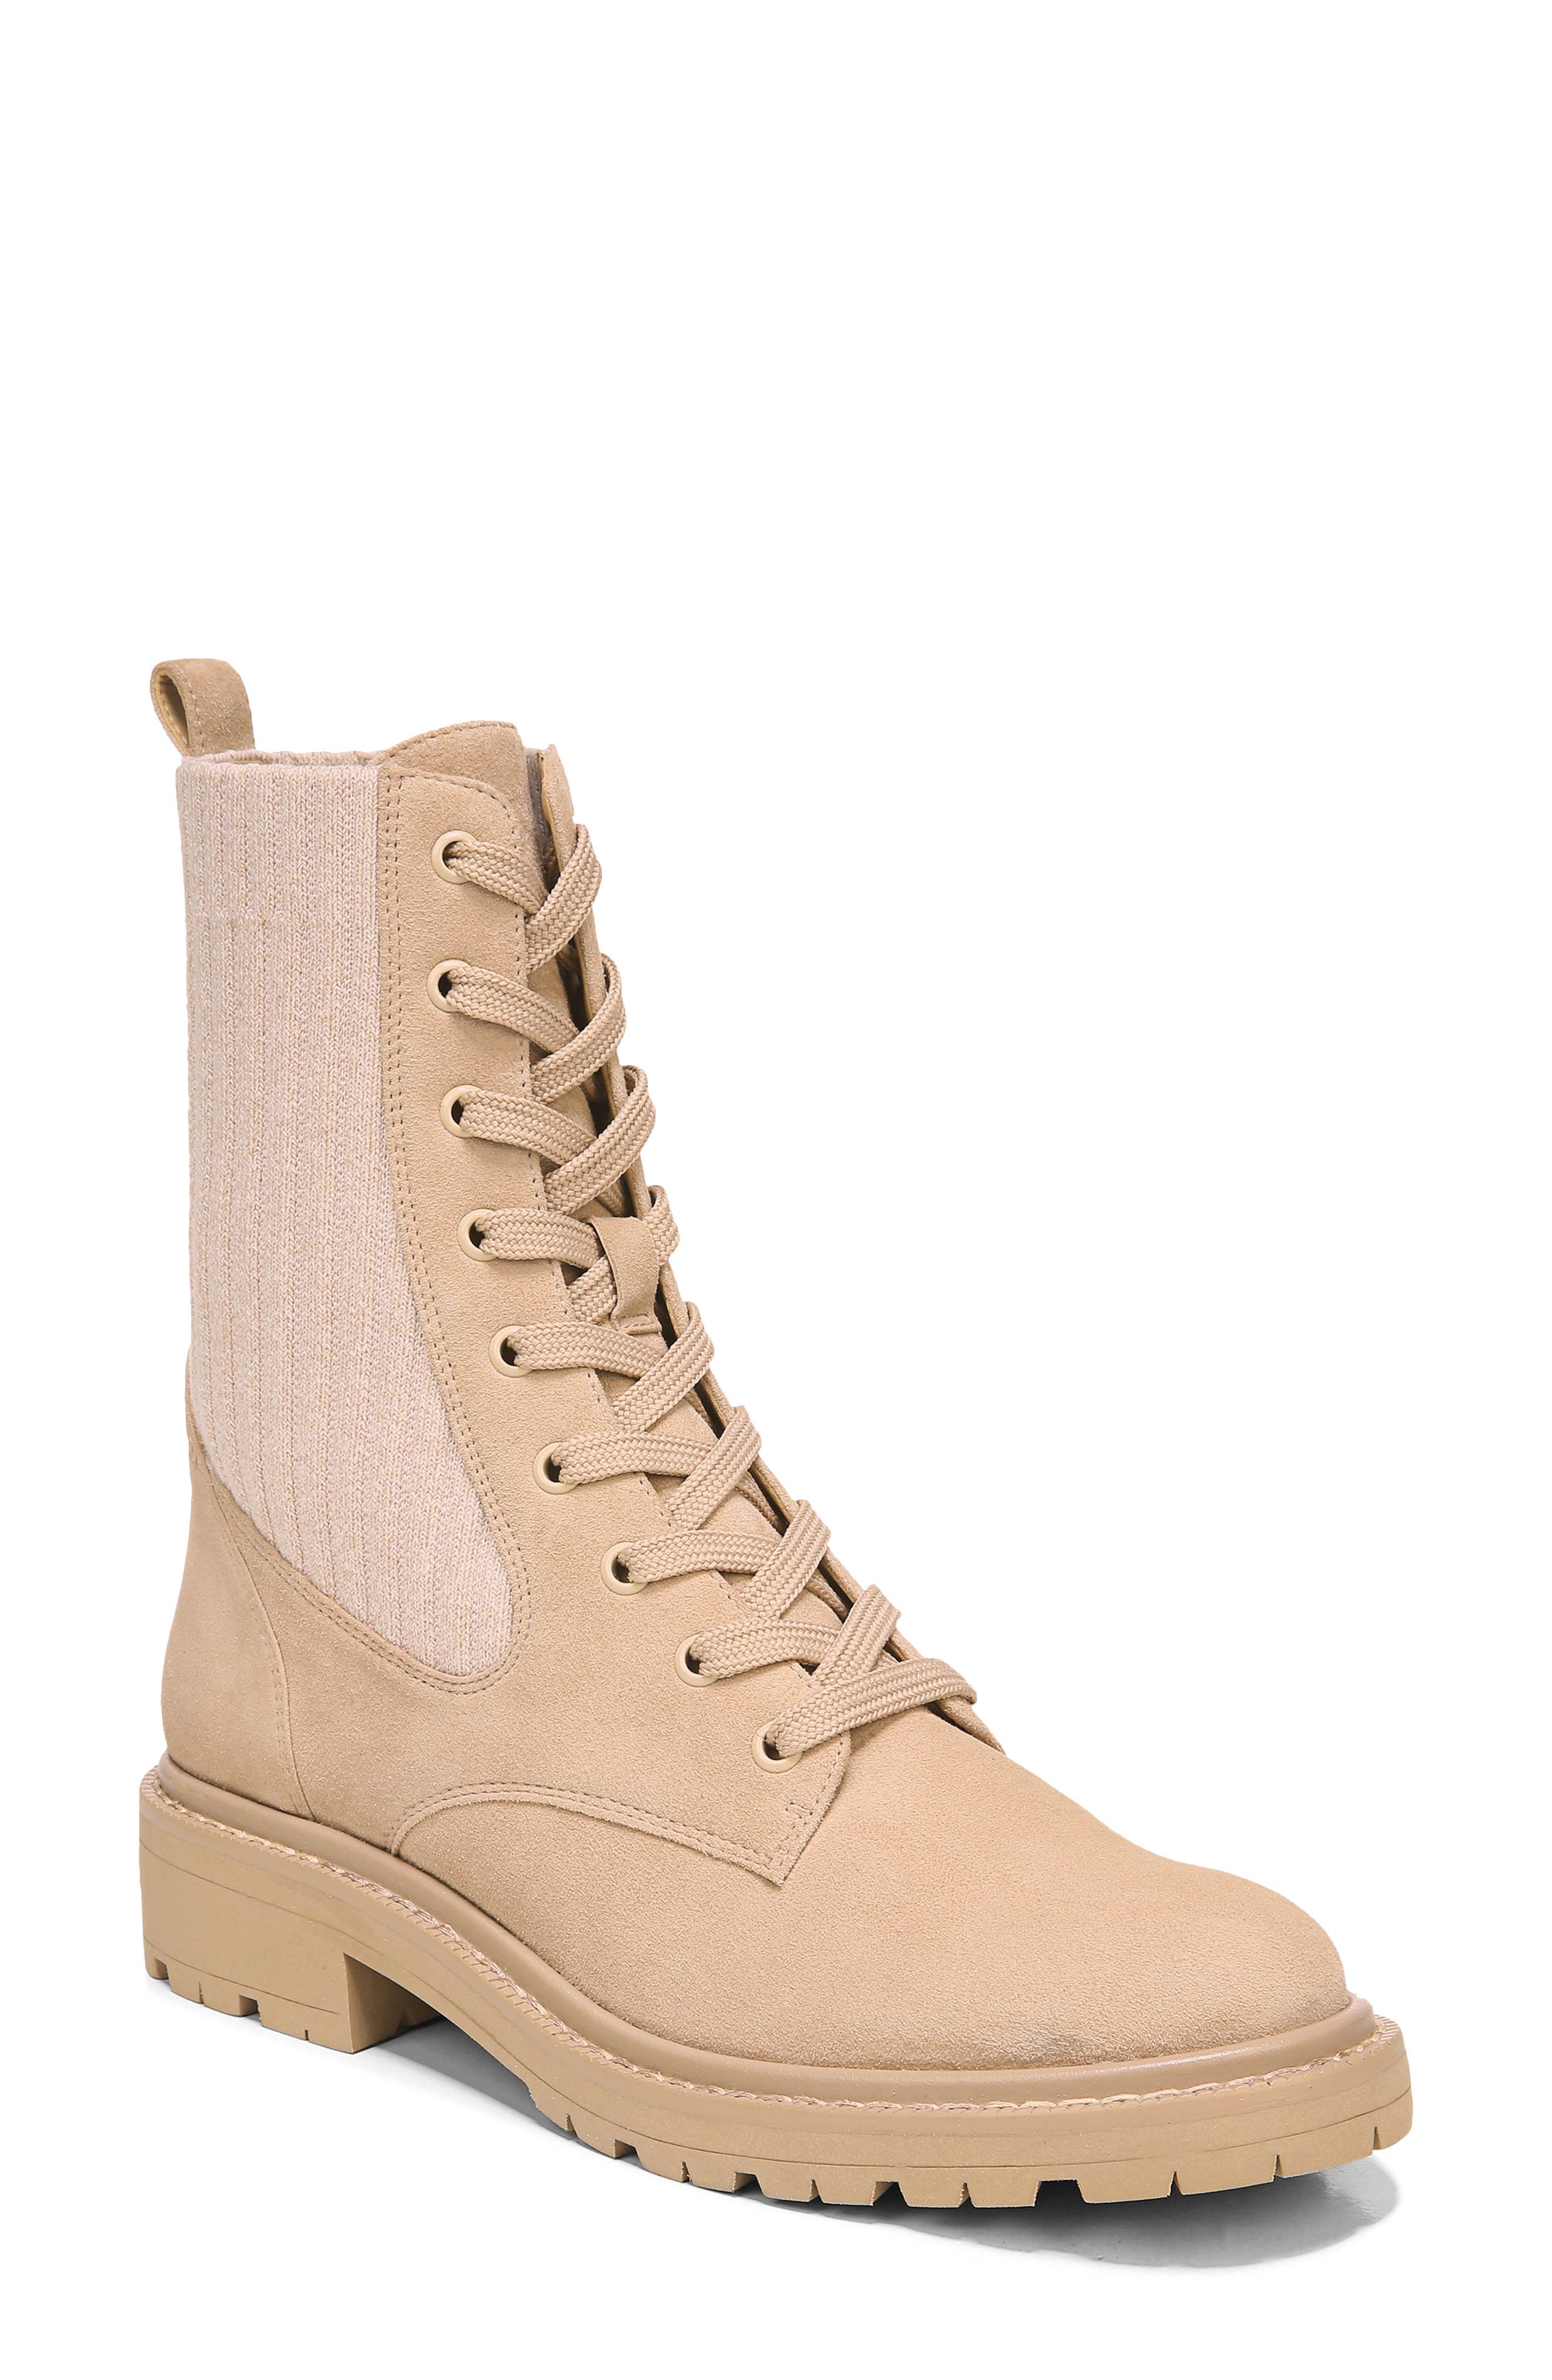 combat boots size 7